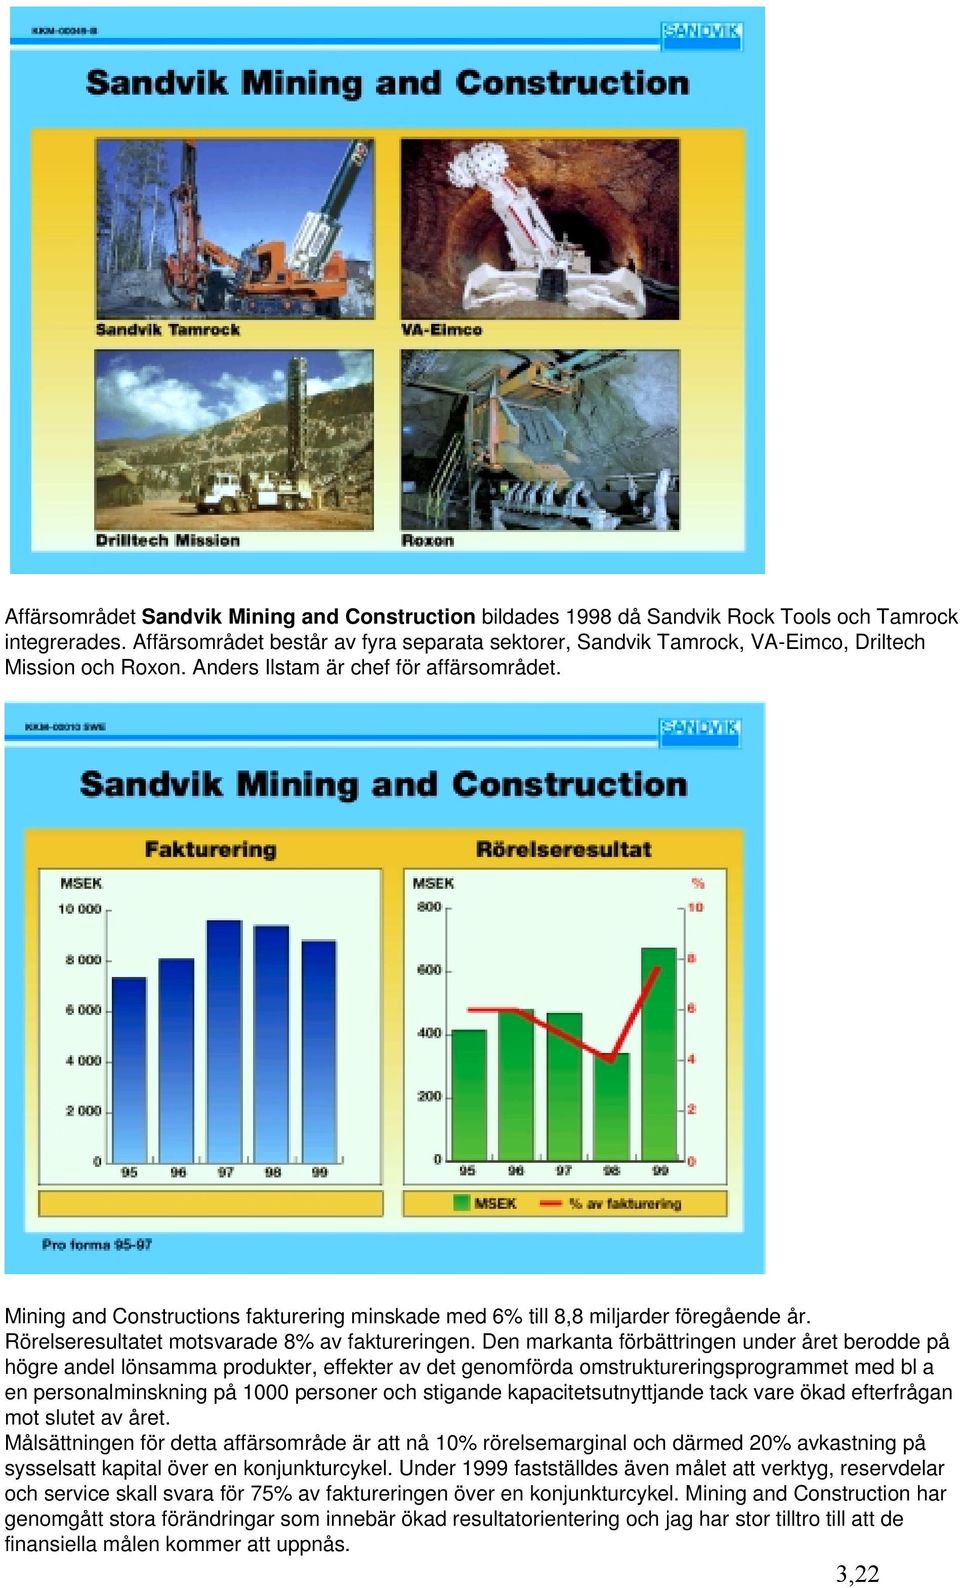 Mining and Constructions fakturering minskade med 6% till 8,8 miljarder föregående år. Rörelseresultatet motsvarade 8% av faktureringen.